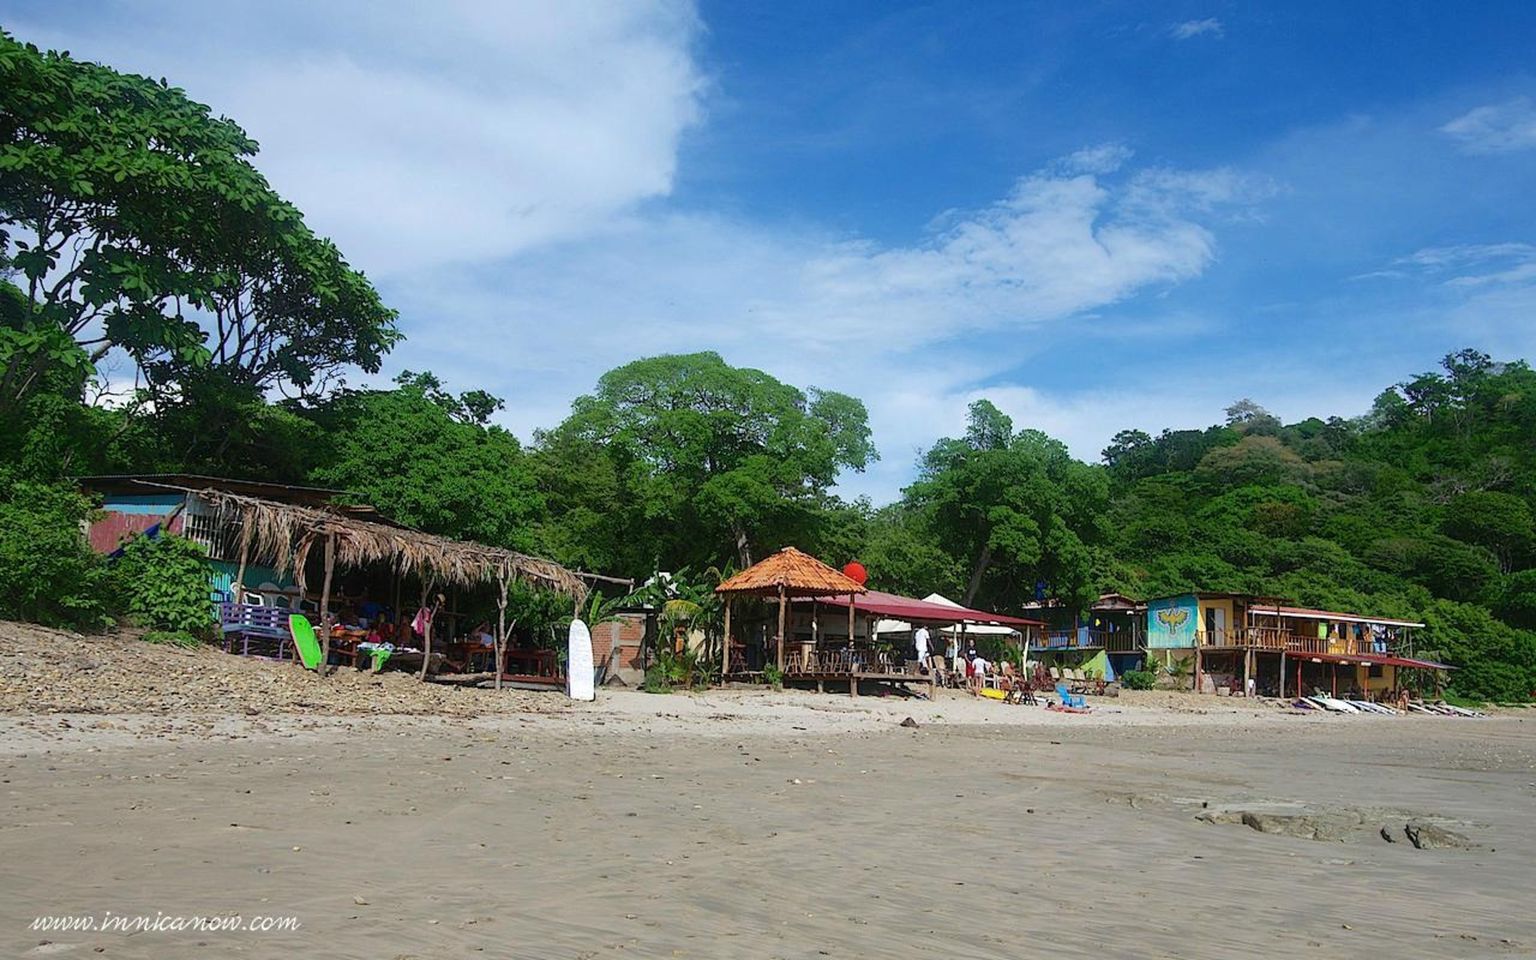 Surfen, Sonne und Gelassenheit: Ihr ultimativer Leitfaden zu Playa Maderas